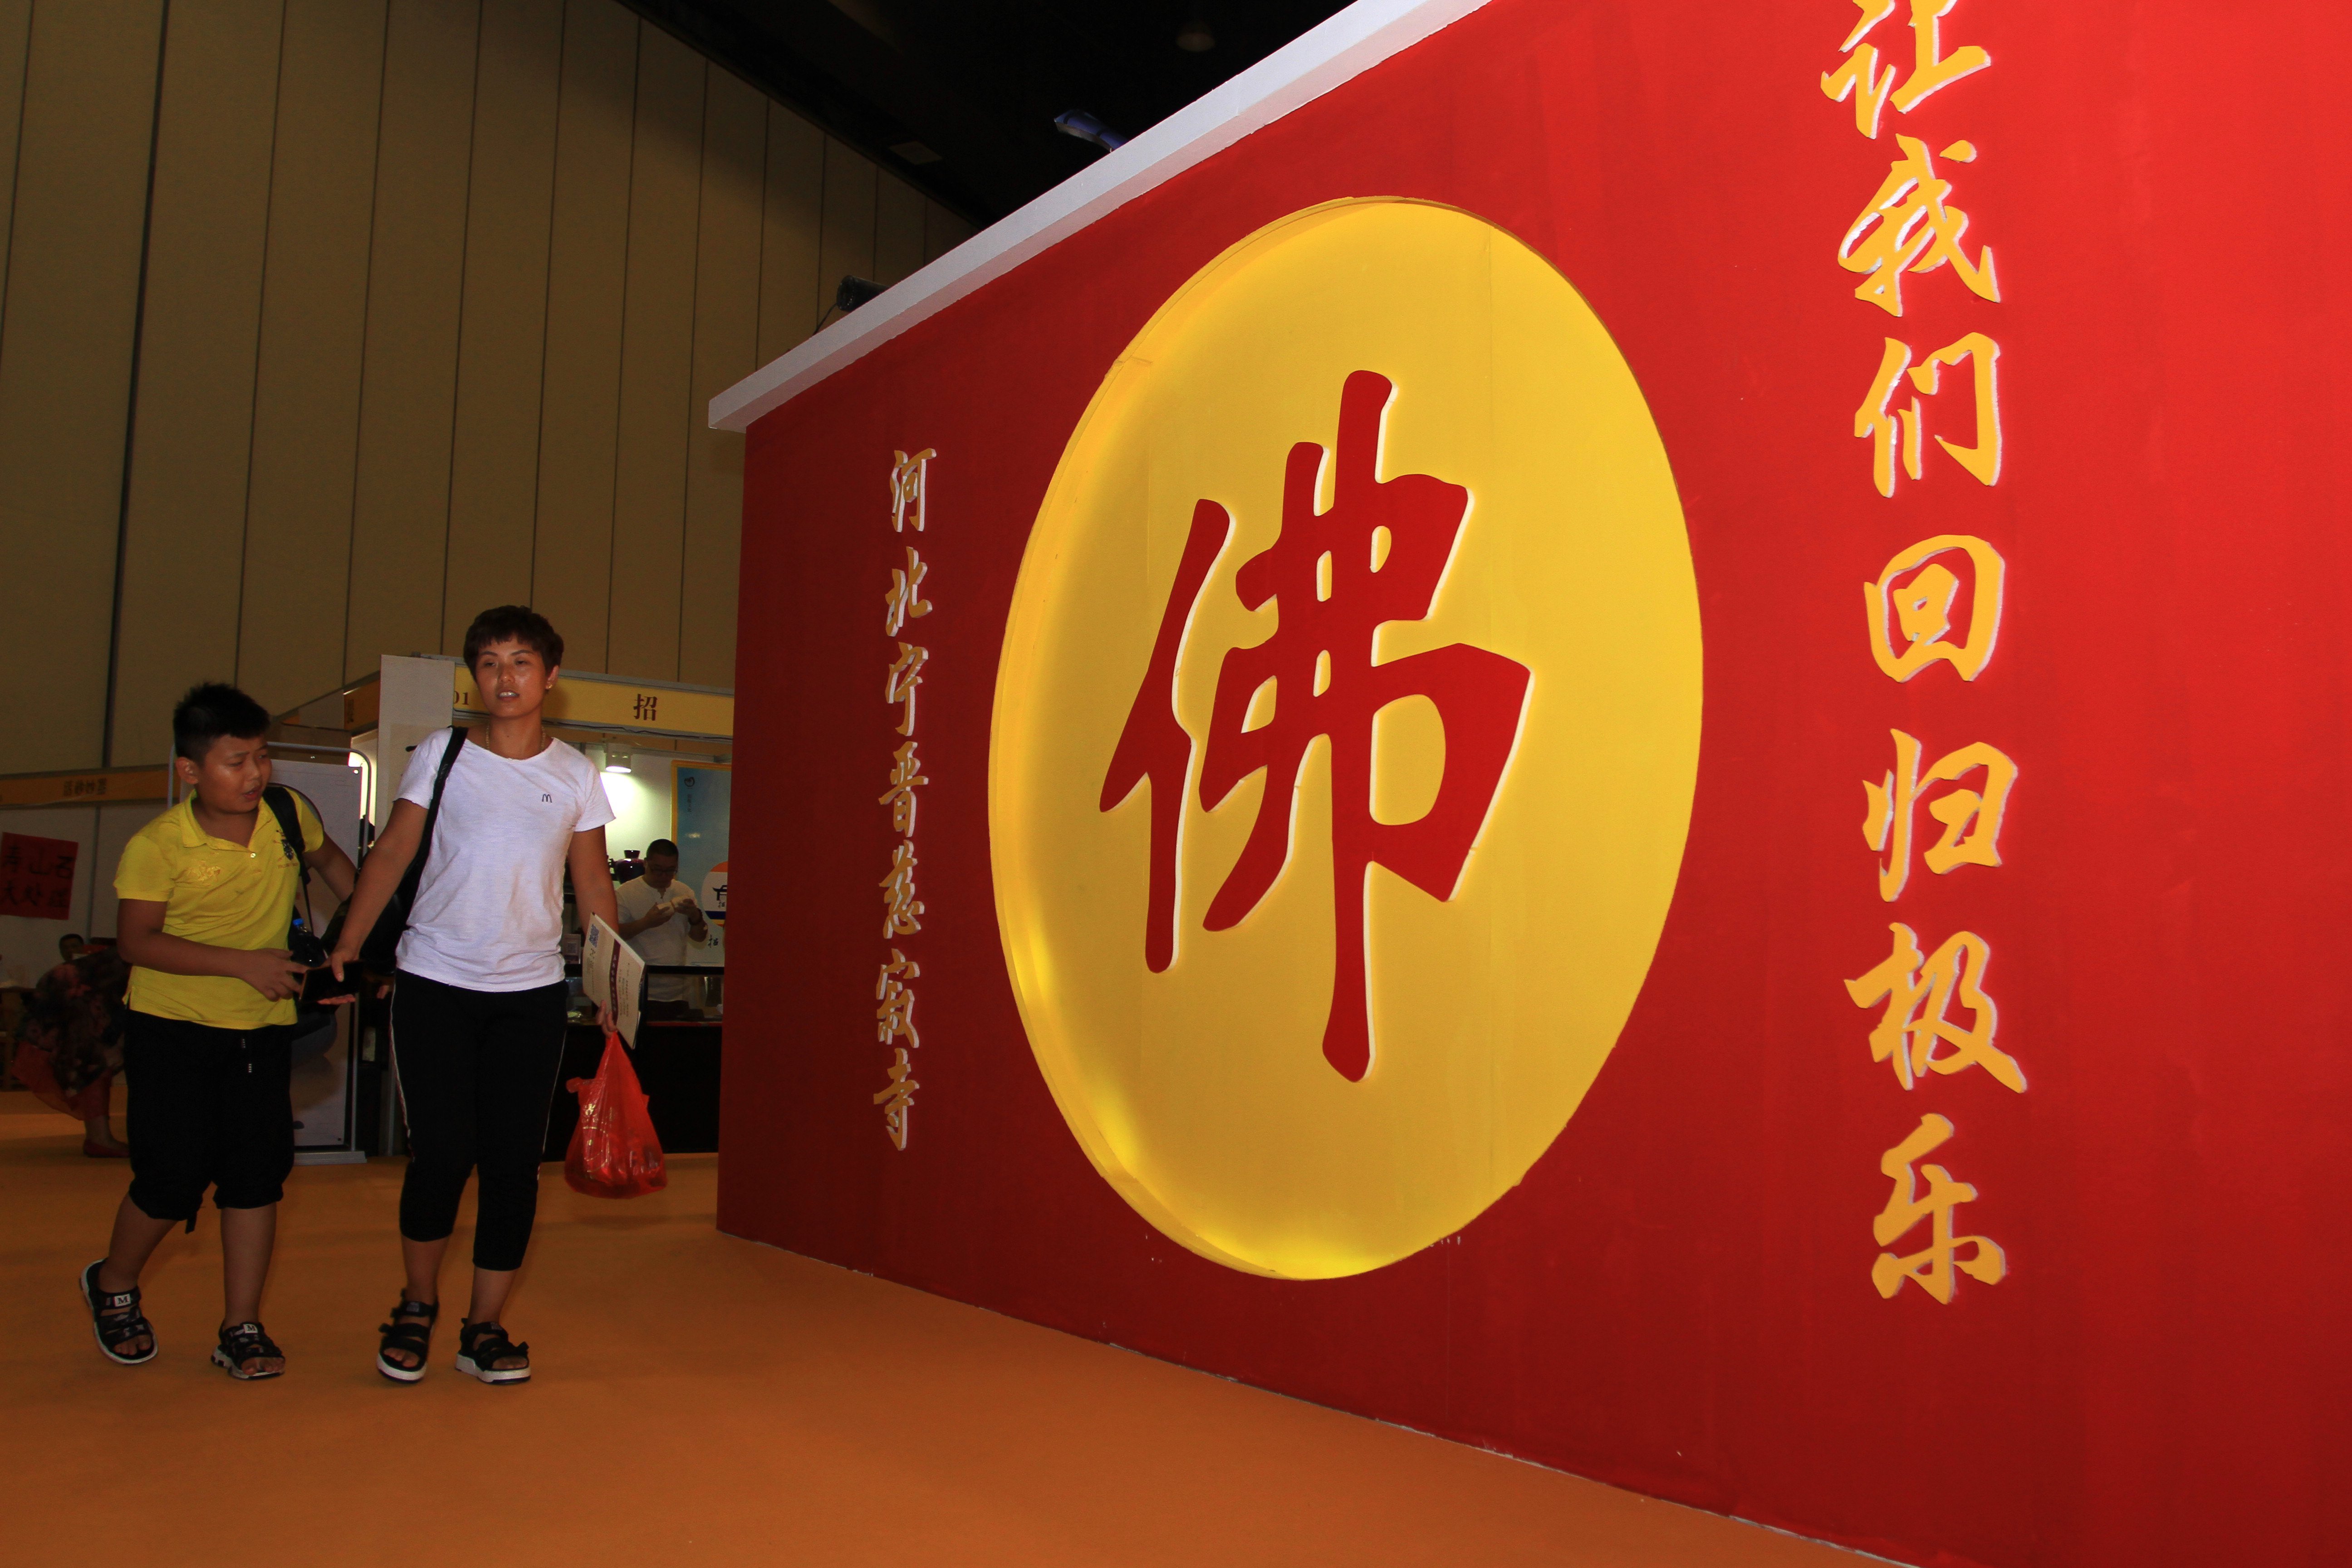 8月4日上午,为期四天的2017中原佛教文化暨佛事用品博览会在郑州国际